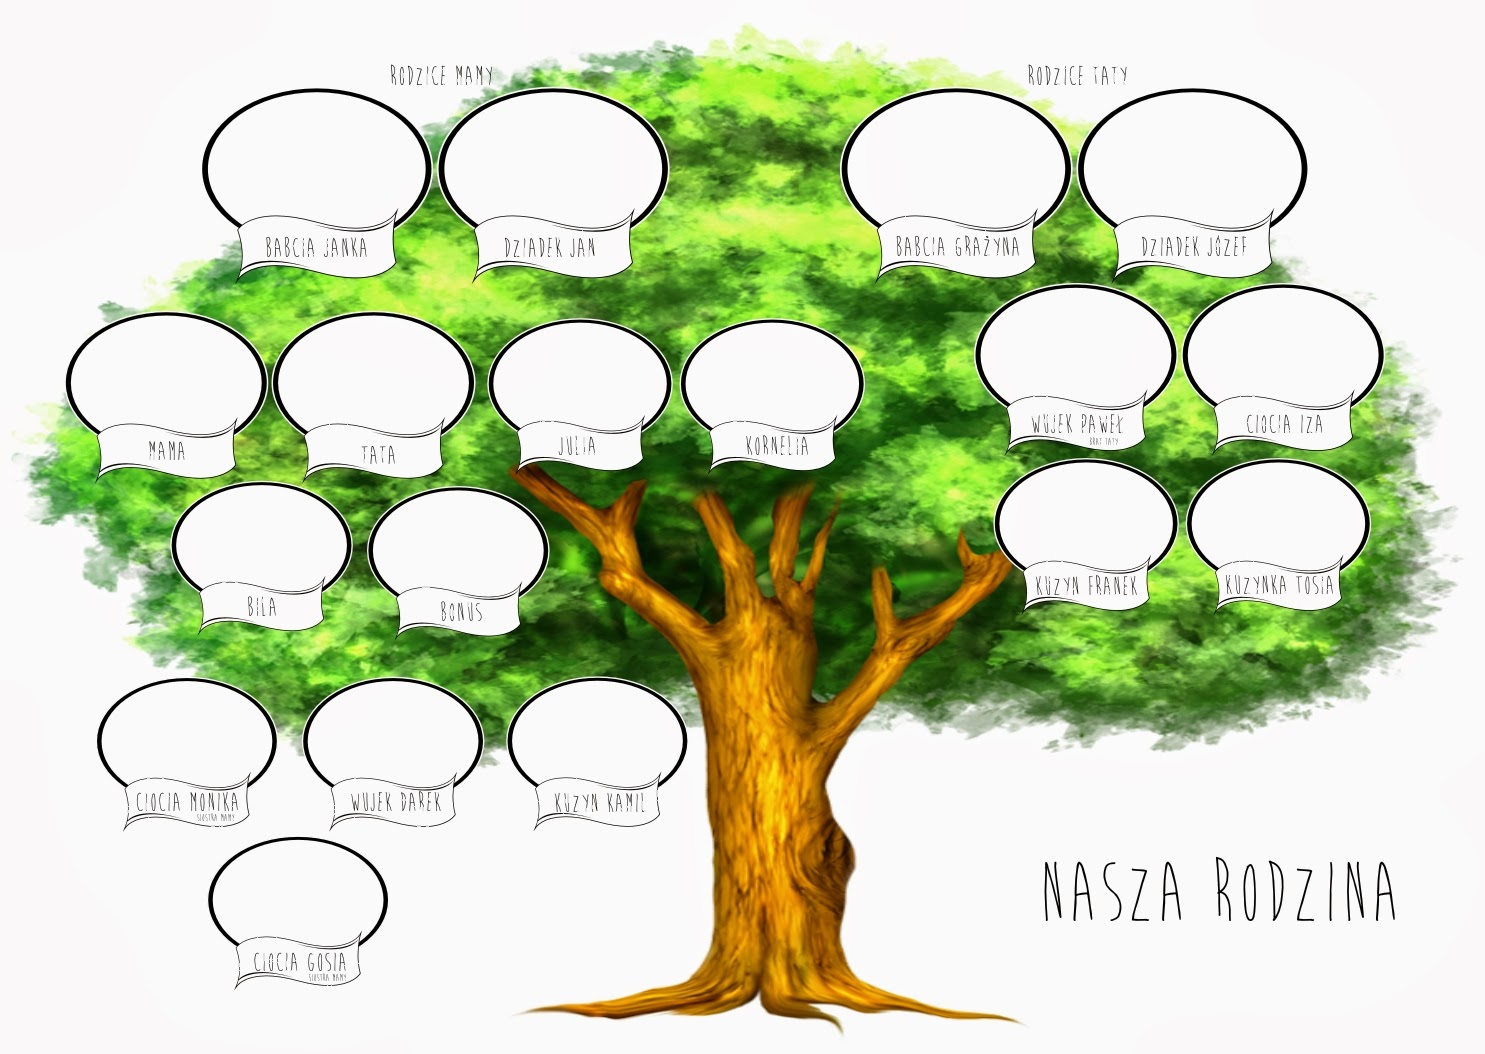 drzewo genealogiczne wzór